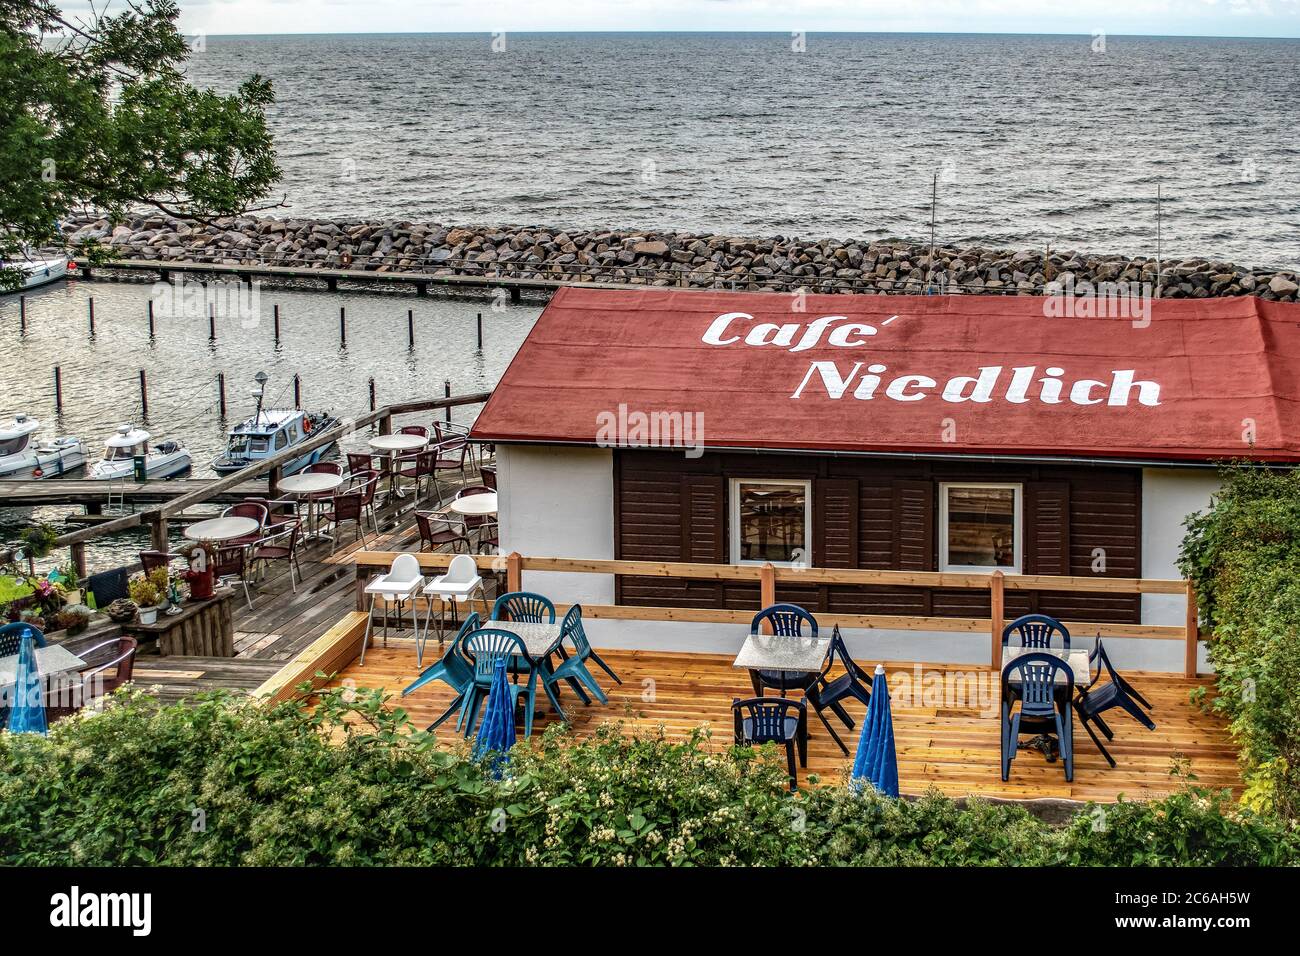 Lohme, Rügen, Alemania - 31 de agosto de 2018: Café Niedlich en el puerto y el océano Foto de stock